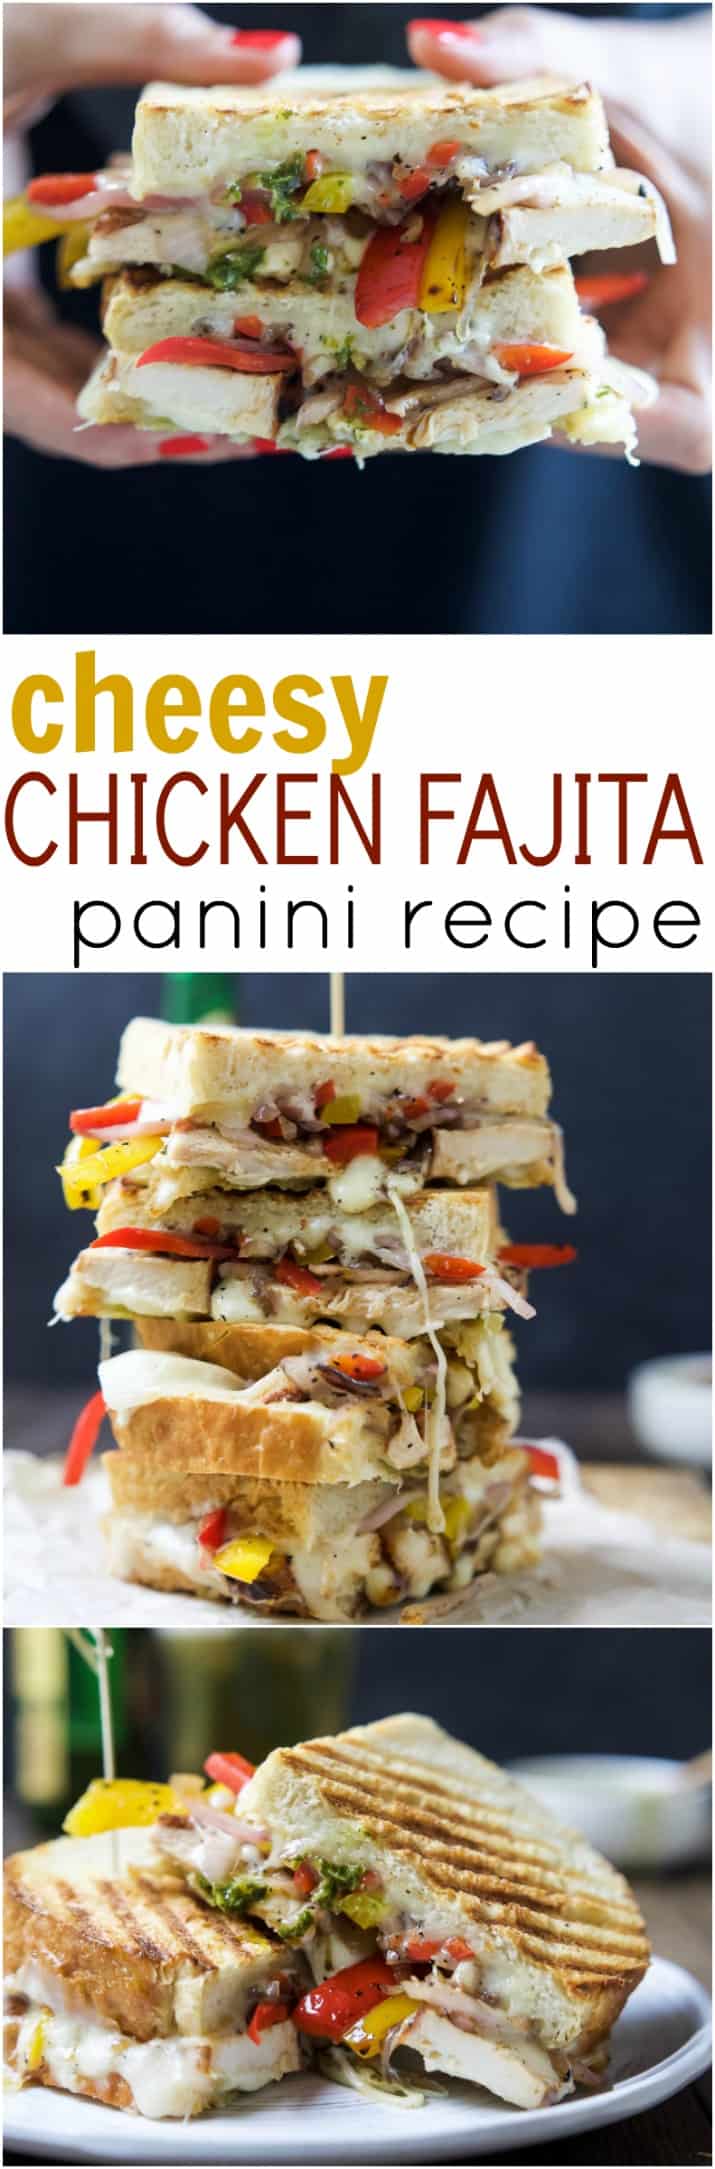 Recipe collage for Cheesy Chicken Fajita Panini